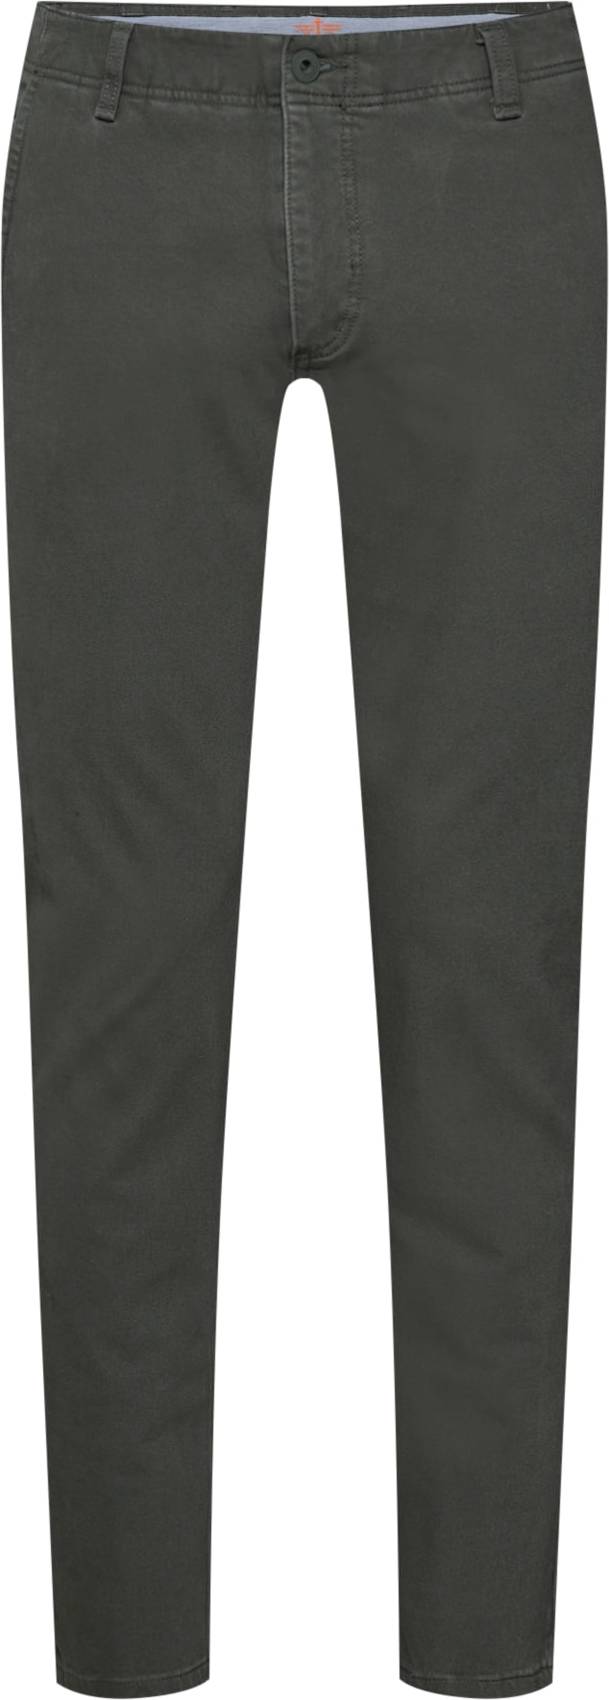 Chino kalhoty 'SMART 360 FLEX ALPHA SLIM (TAPERED)' Dockers olivová